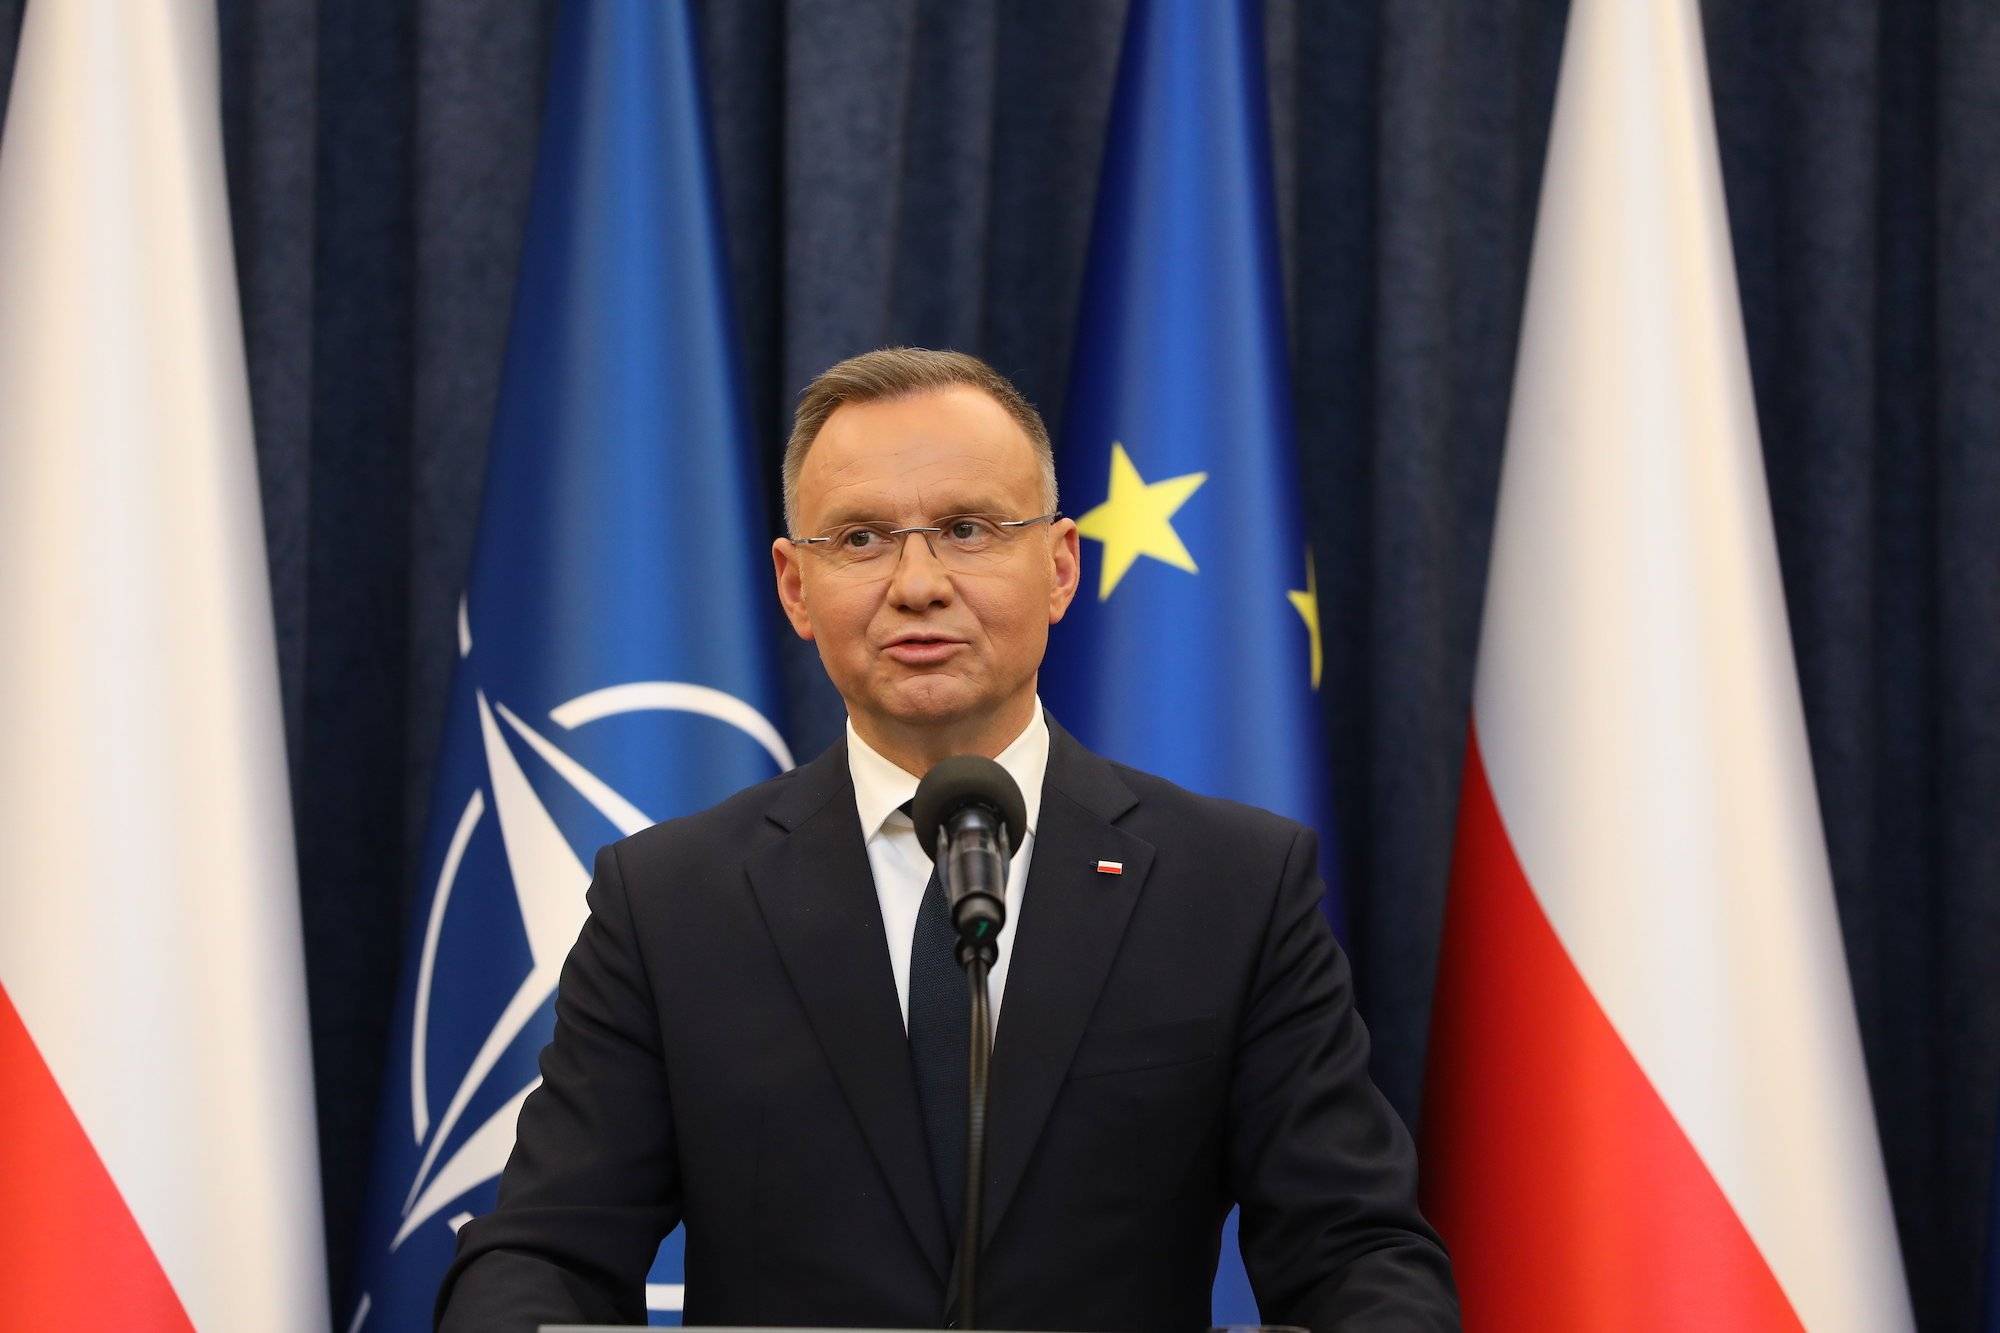 Prezydent Andrzej Duda na tle flag UE, Polski i NATO. Ubrany w ciemny garnitur, na twarzy okulary. Przemawia do mikrofonu